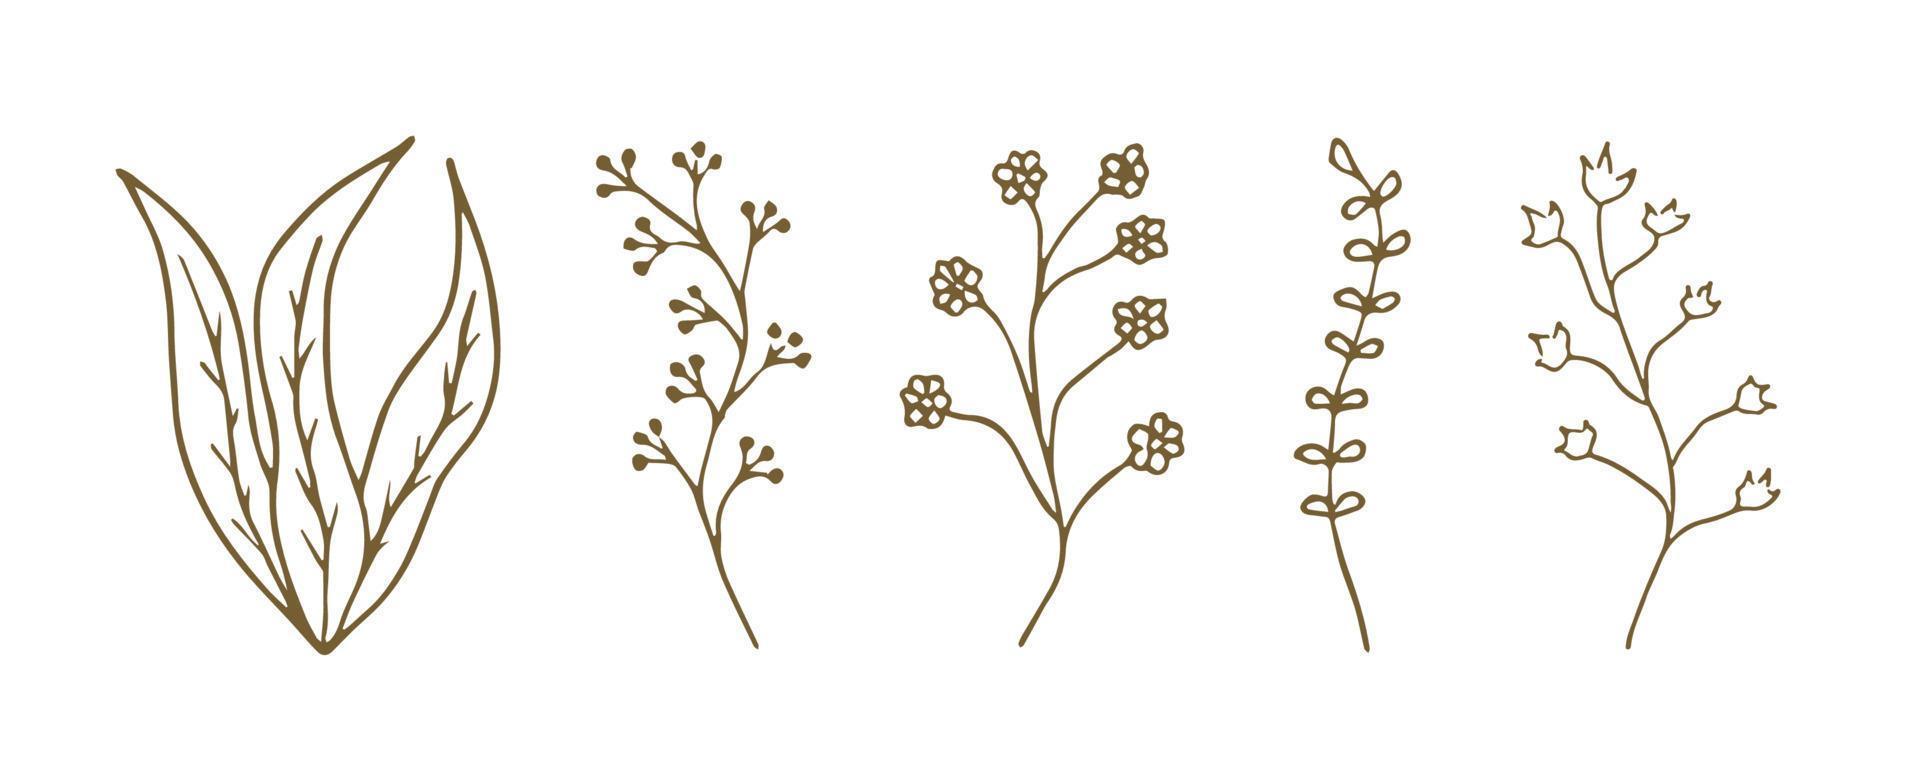 Plant doodle illustration. Leaf and flower line art. Floral branch sketch vector